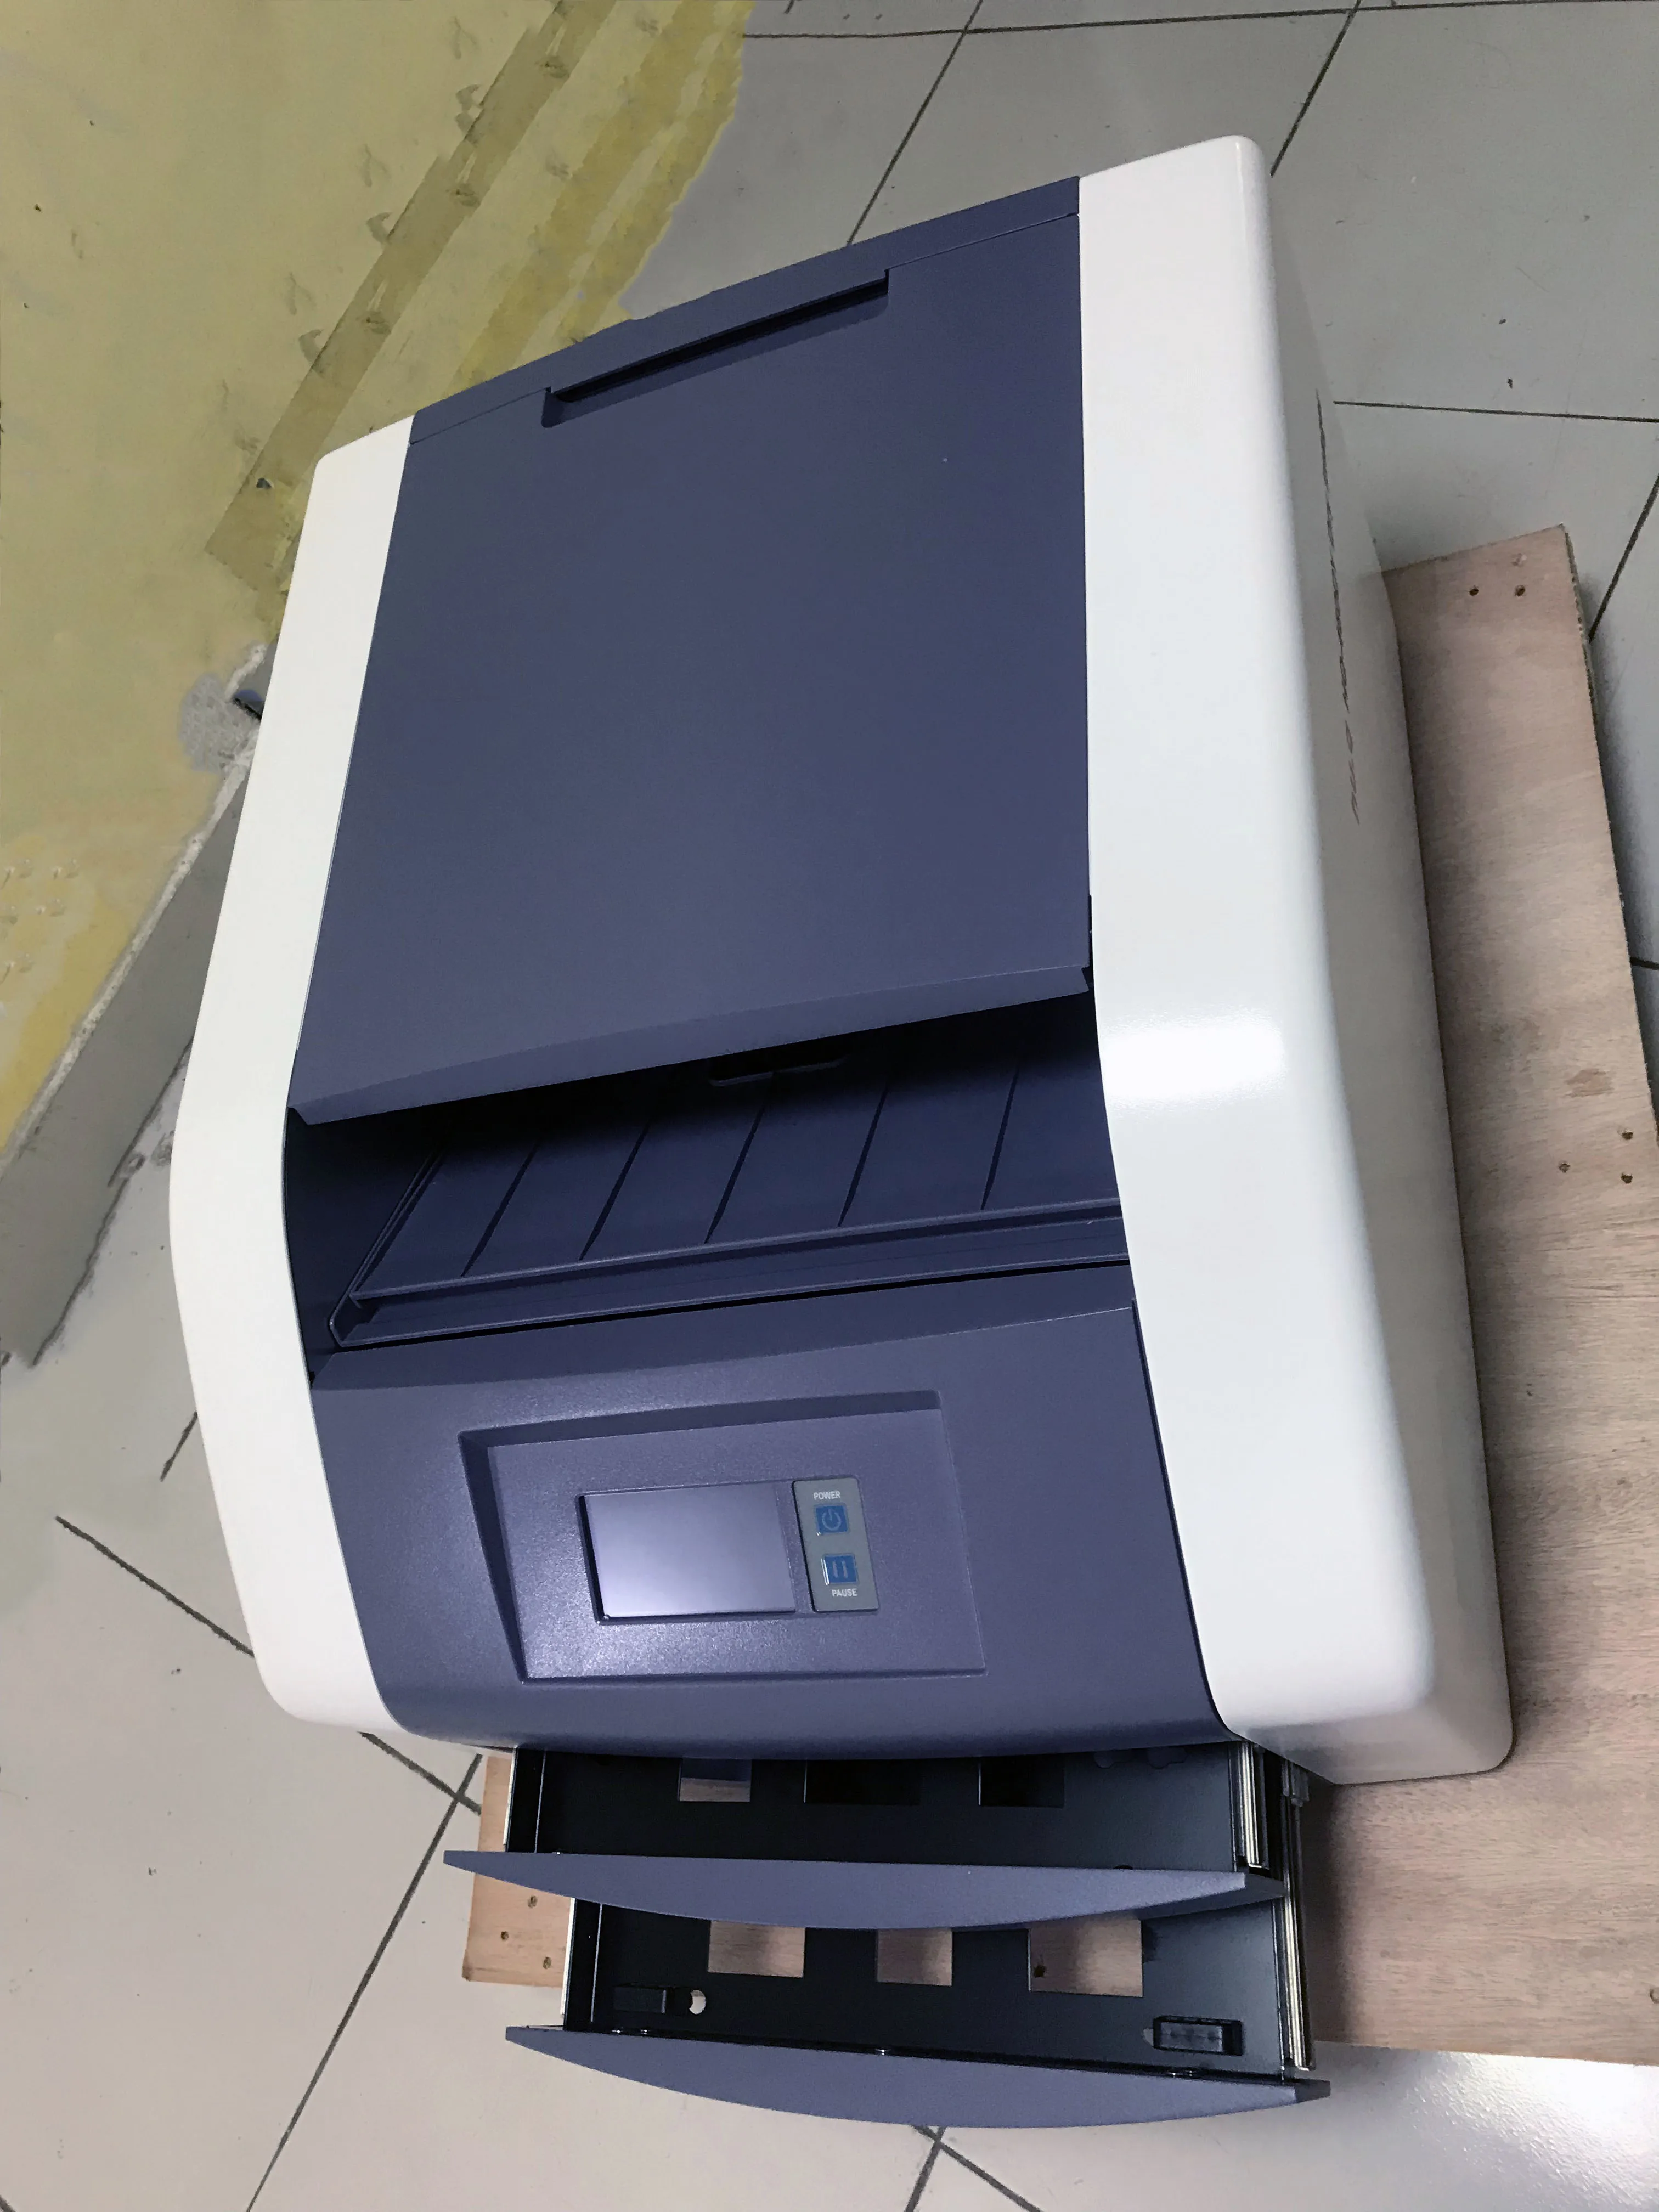 
Самый дешевый сухой пленочный принтер для рентгена/медицинского пленочного принтера, точный MSDY03 